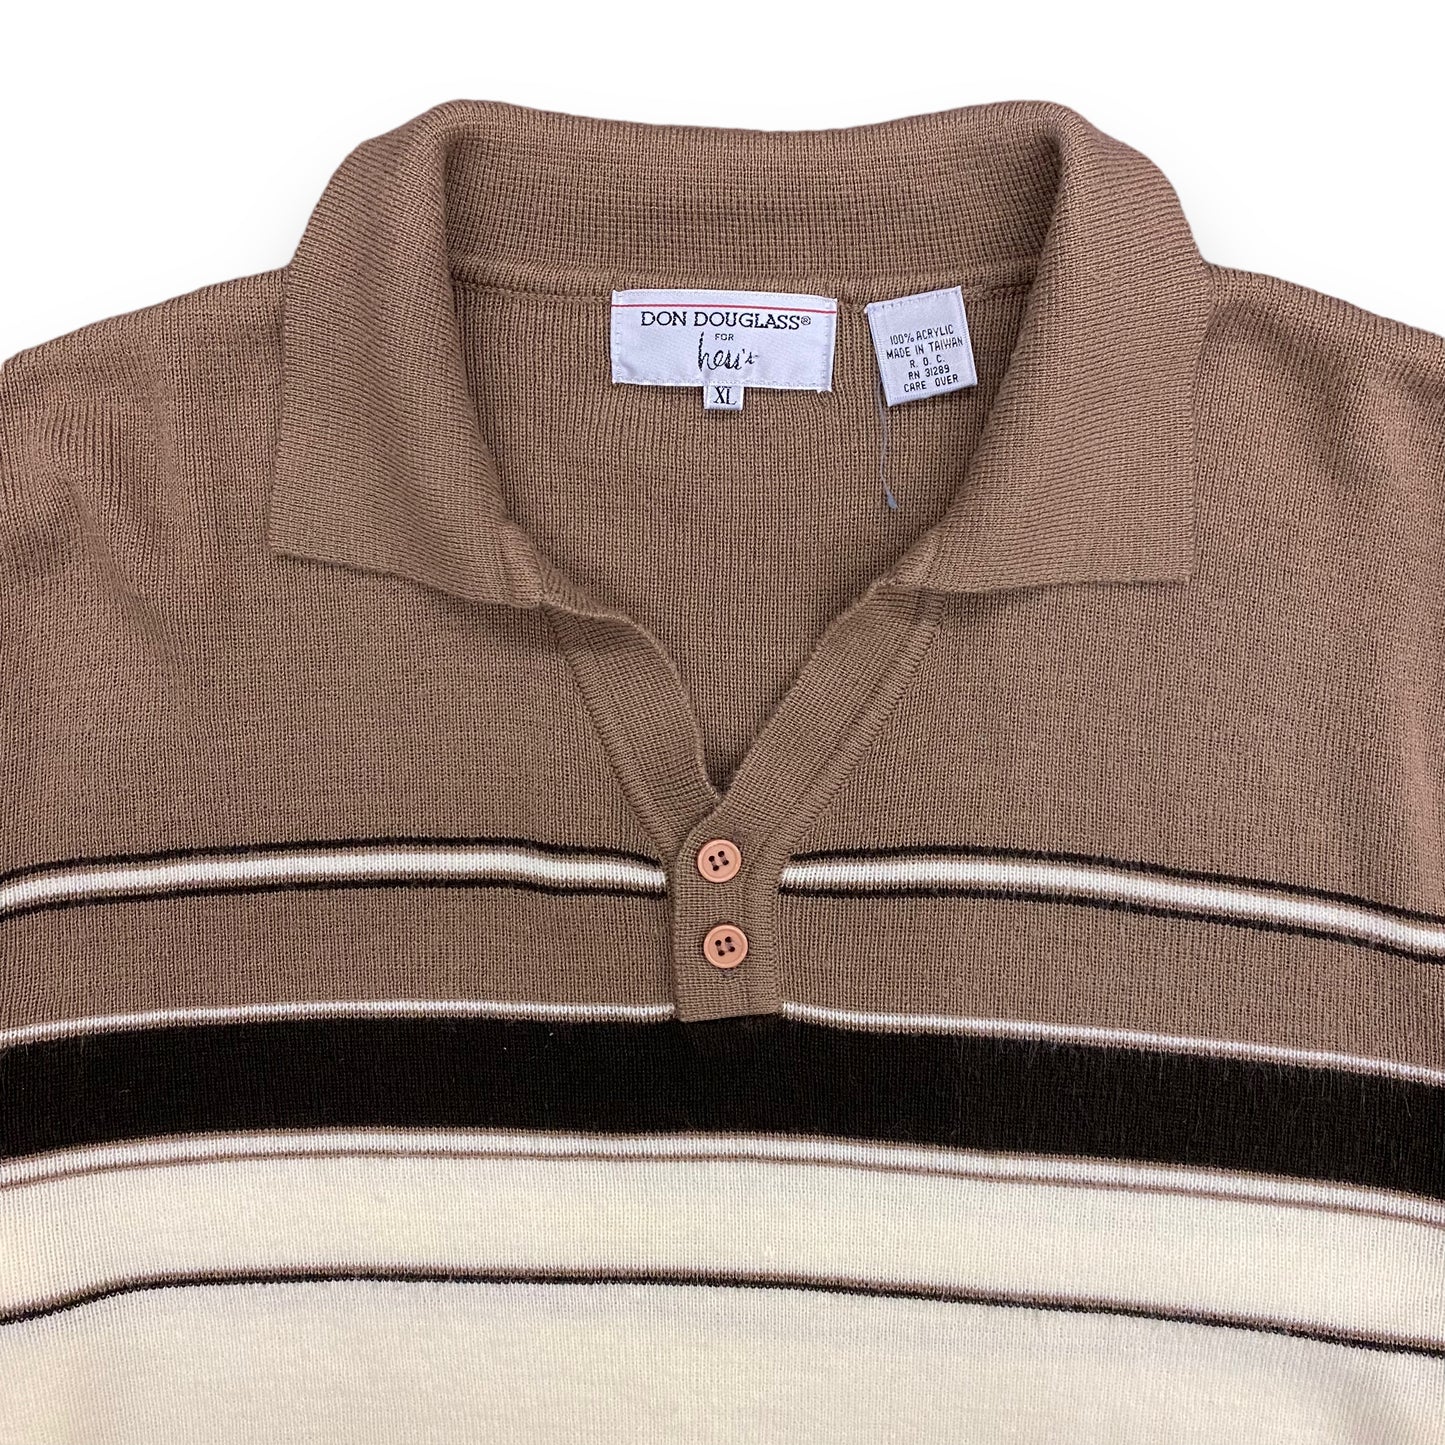 1980s Don Douglass Brown & White Striped Sweater - Size XL